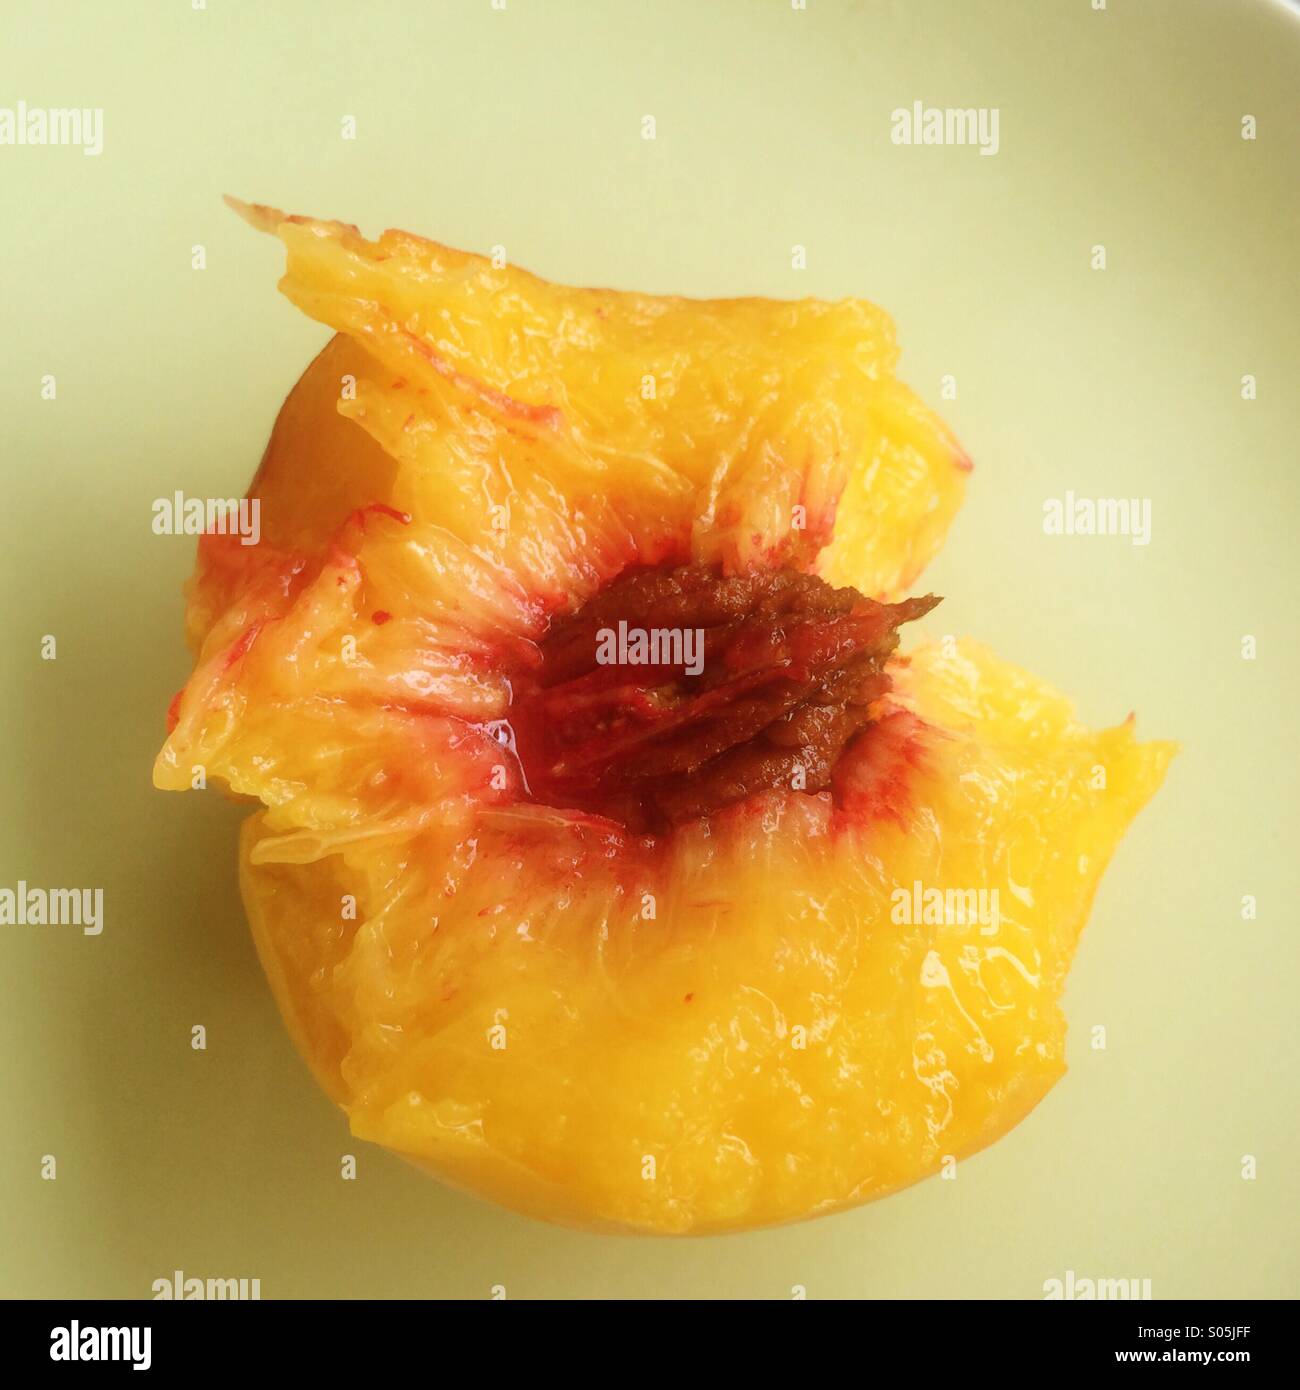 Half eaten fresh Georgia peach. Stock Photo